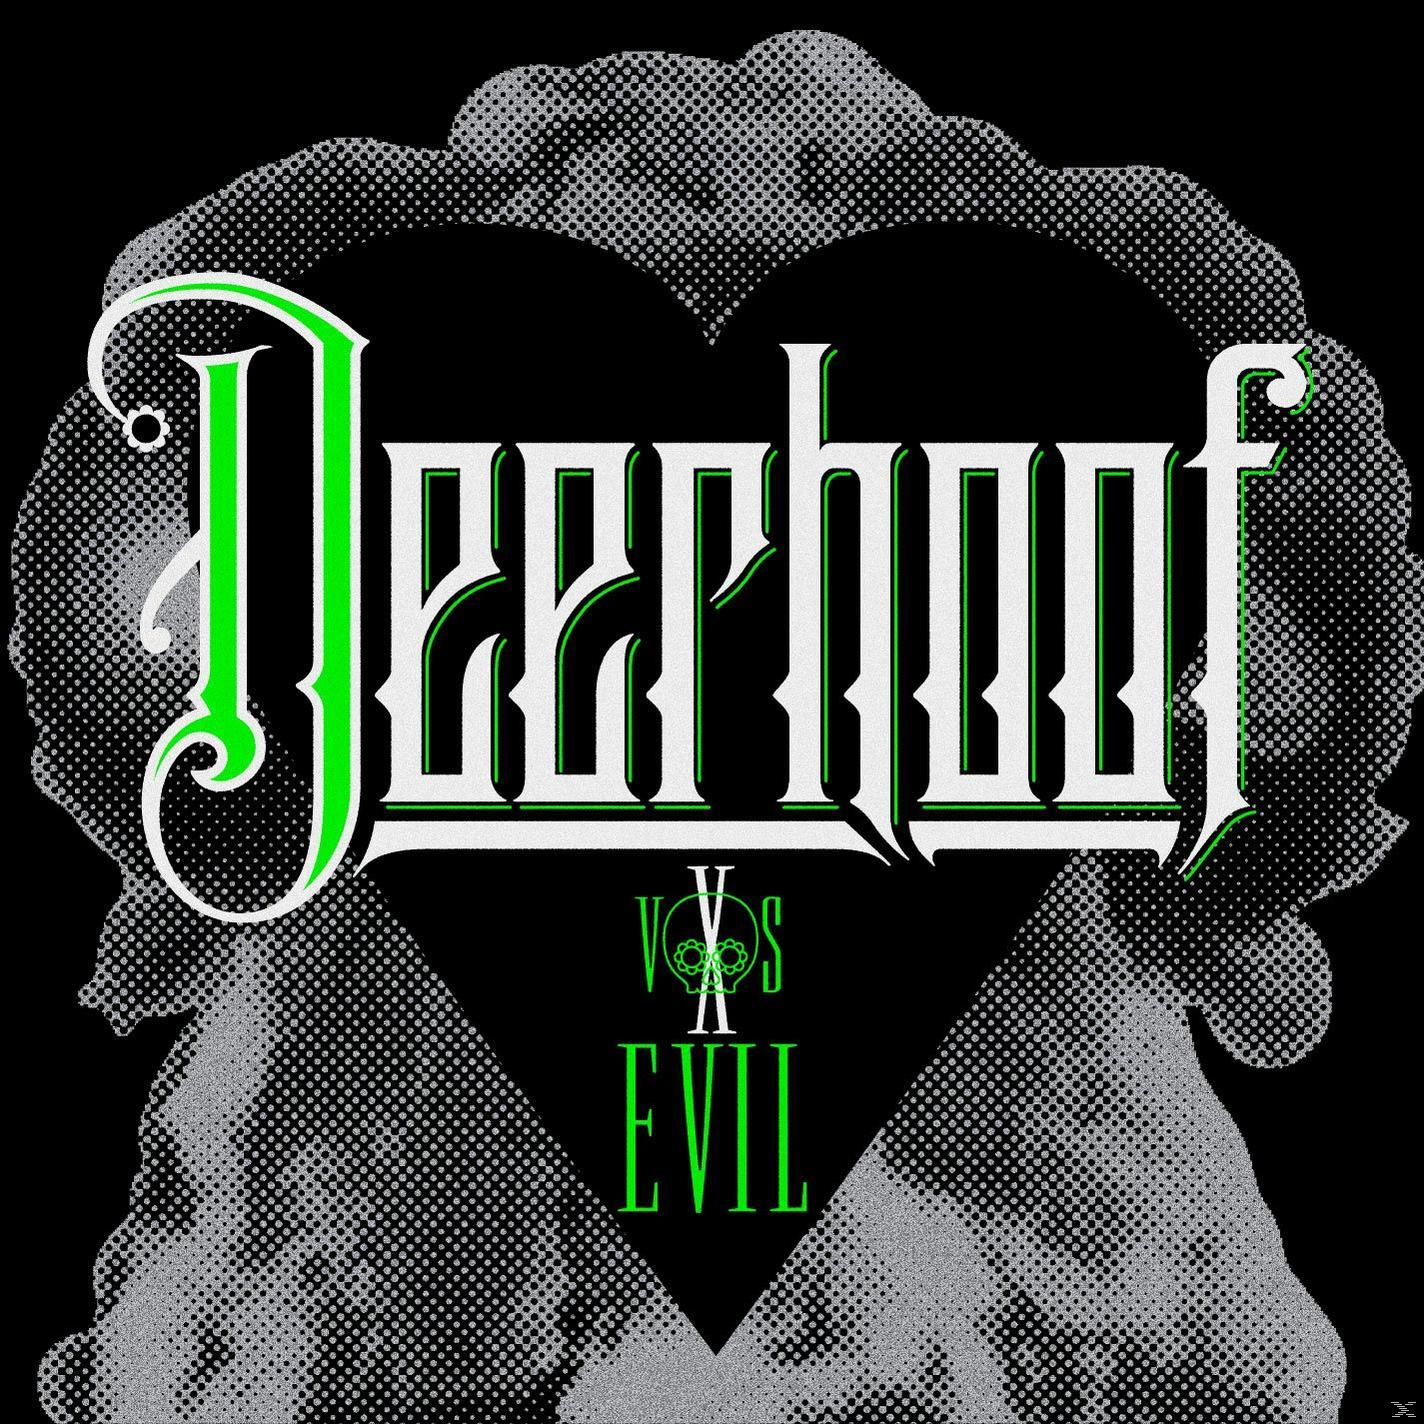 Deerhoof - Deerhoof Vs. (CD) - Evil